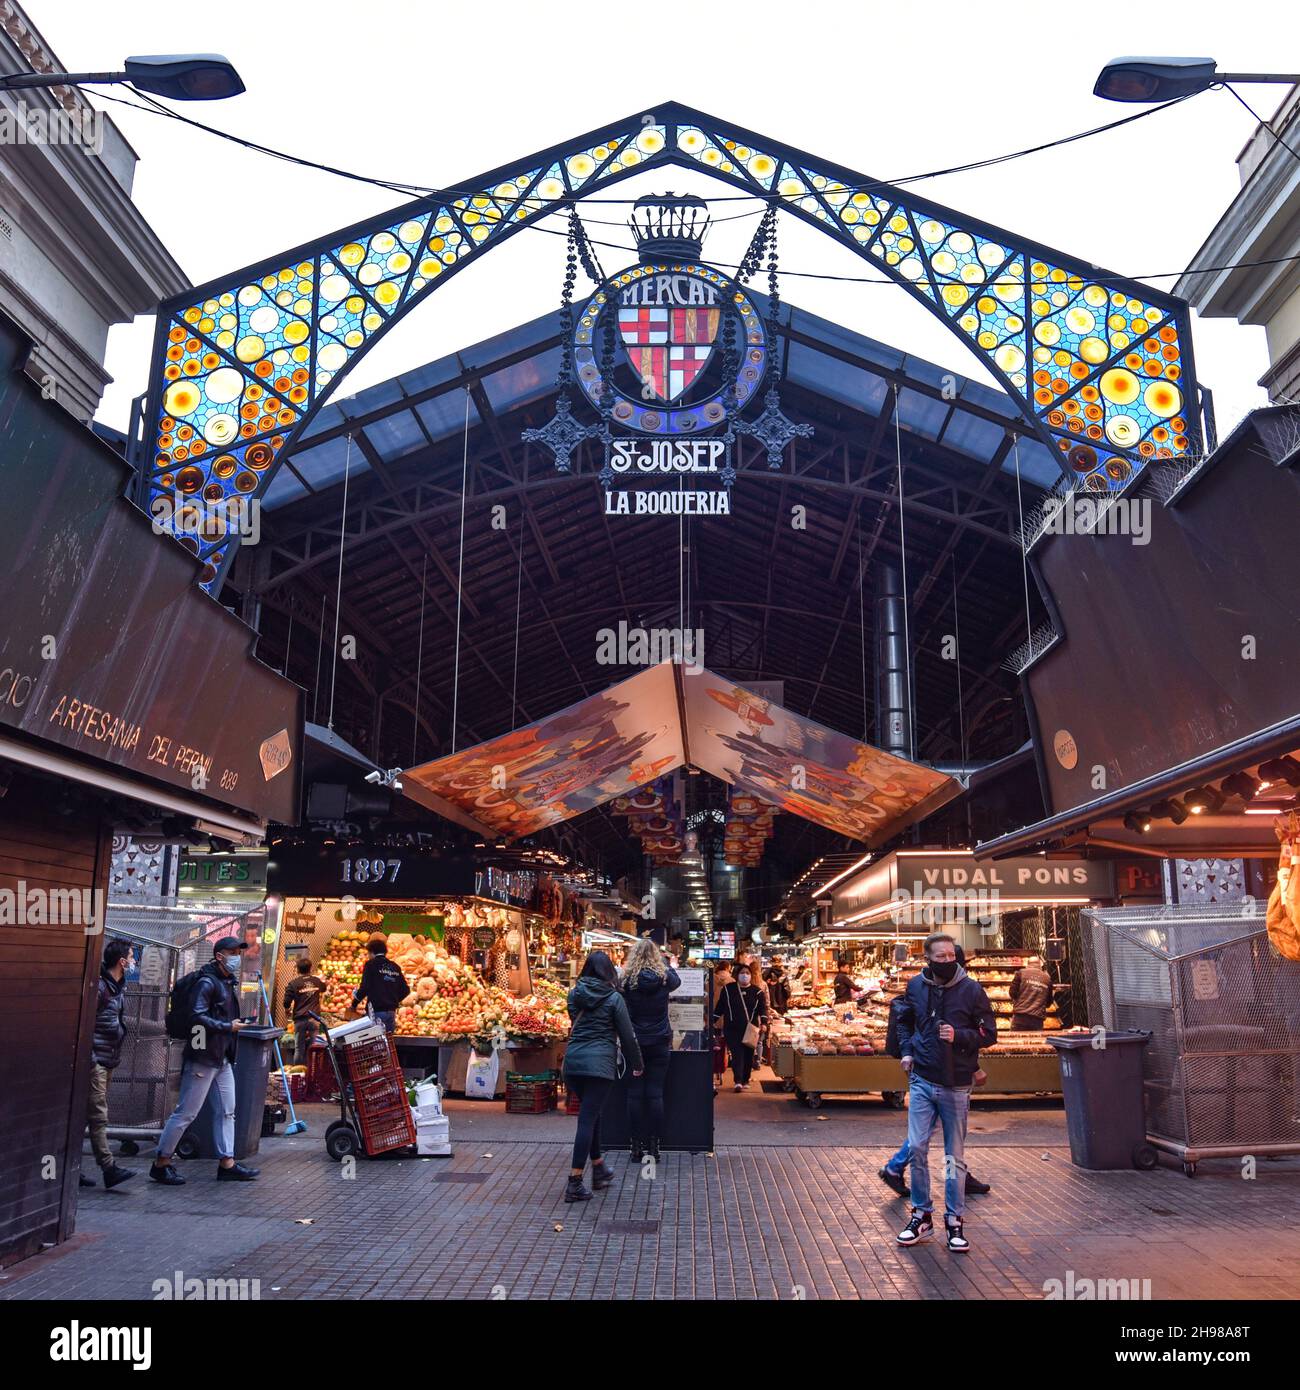 Barcellona, Spagna - 23 Nov, 2021: L'ingresso a la Boqueria, il famoso mercato alimentare di Barcellona Foto Stock